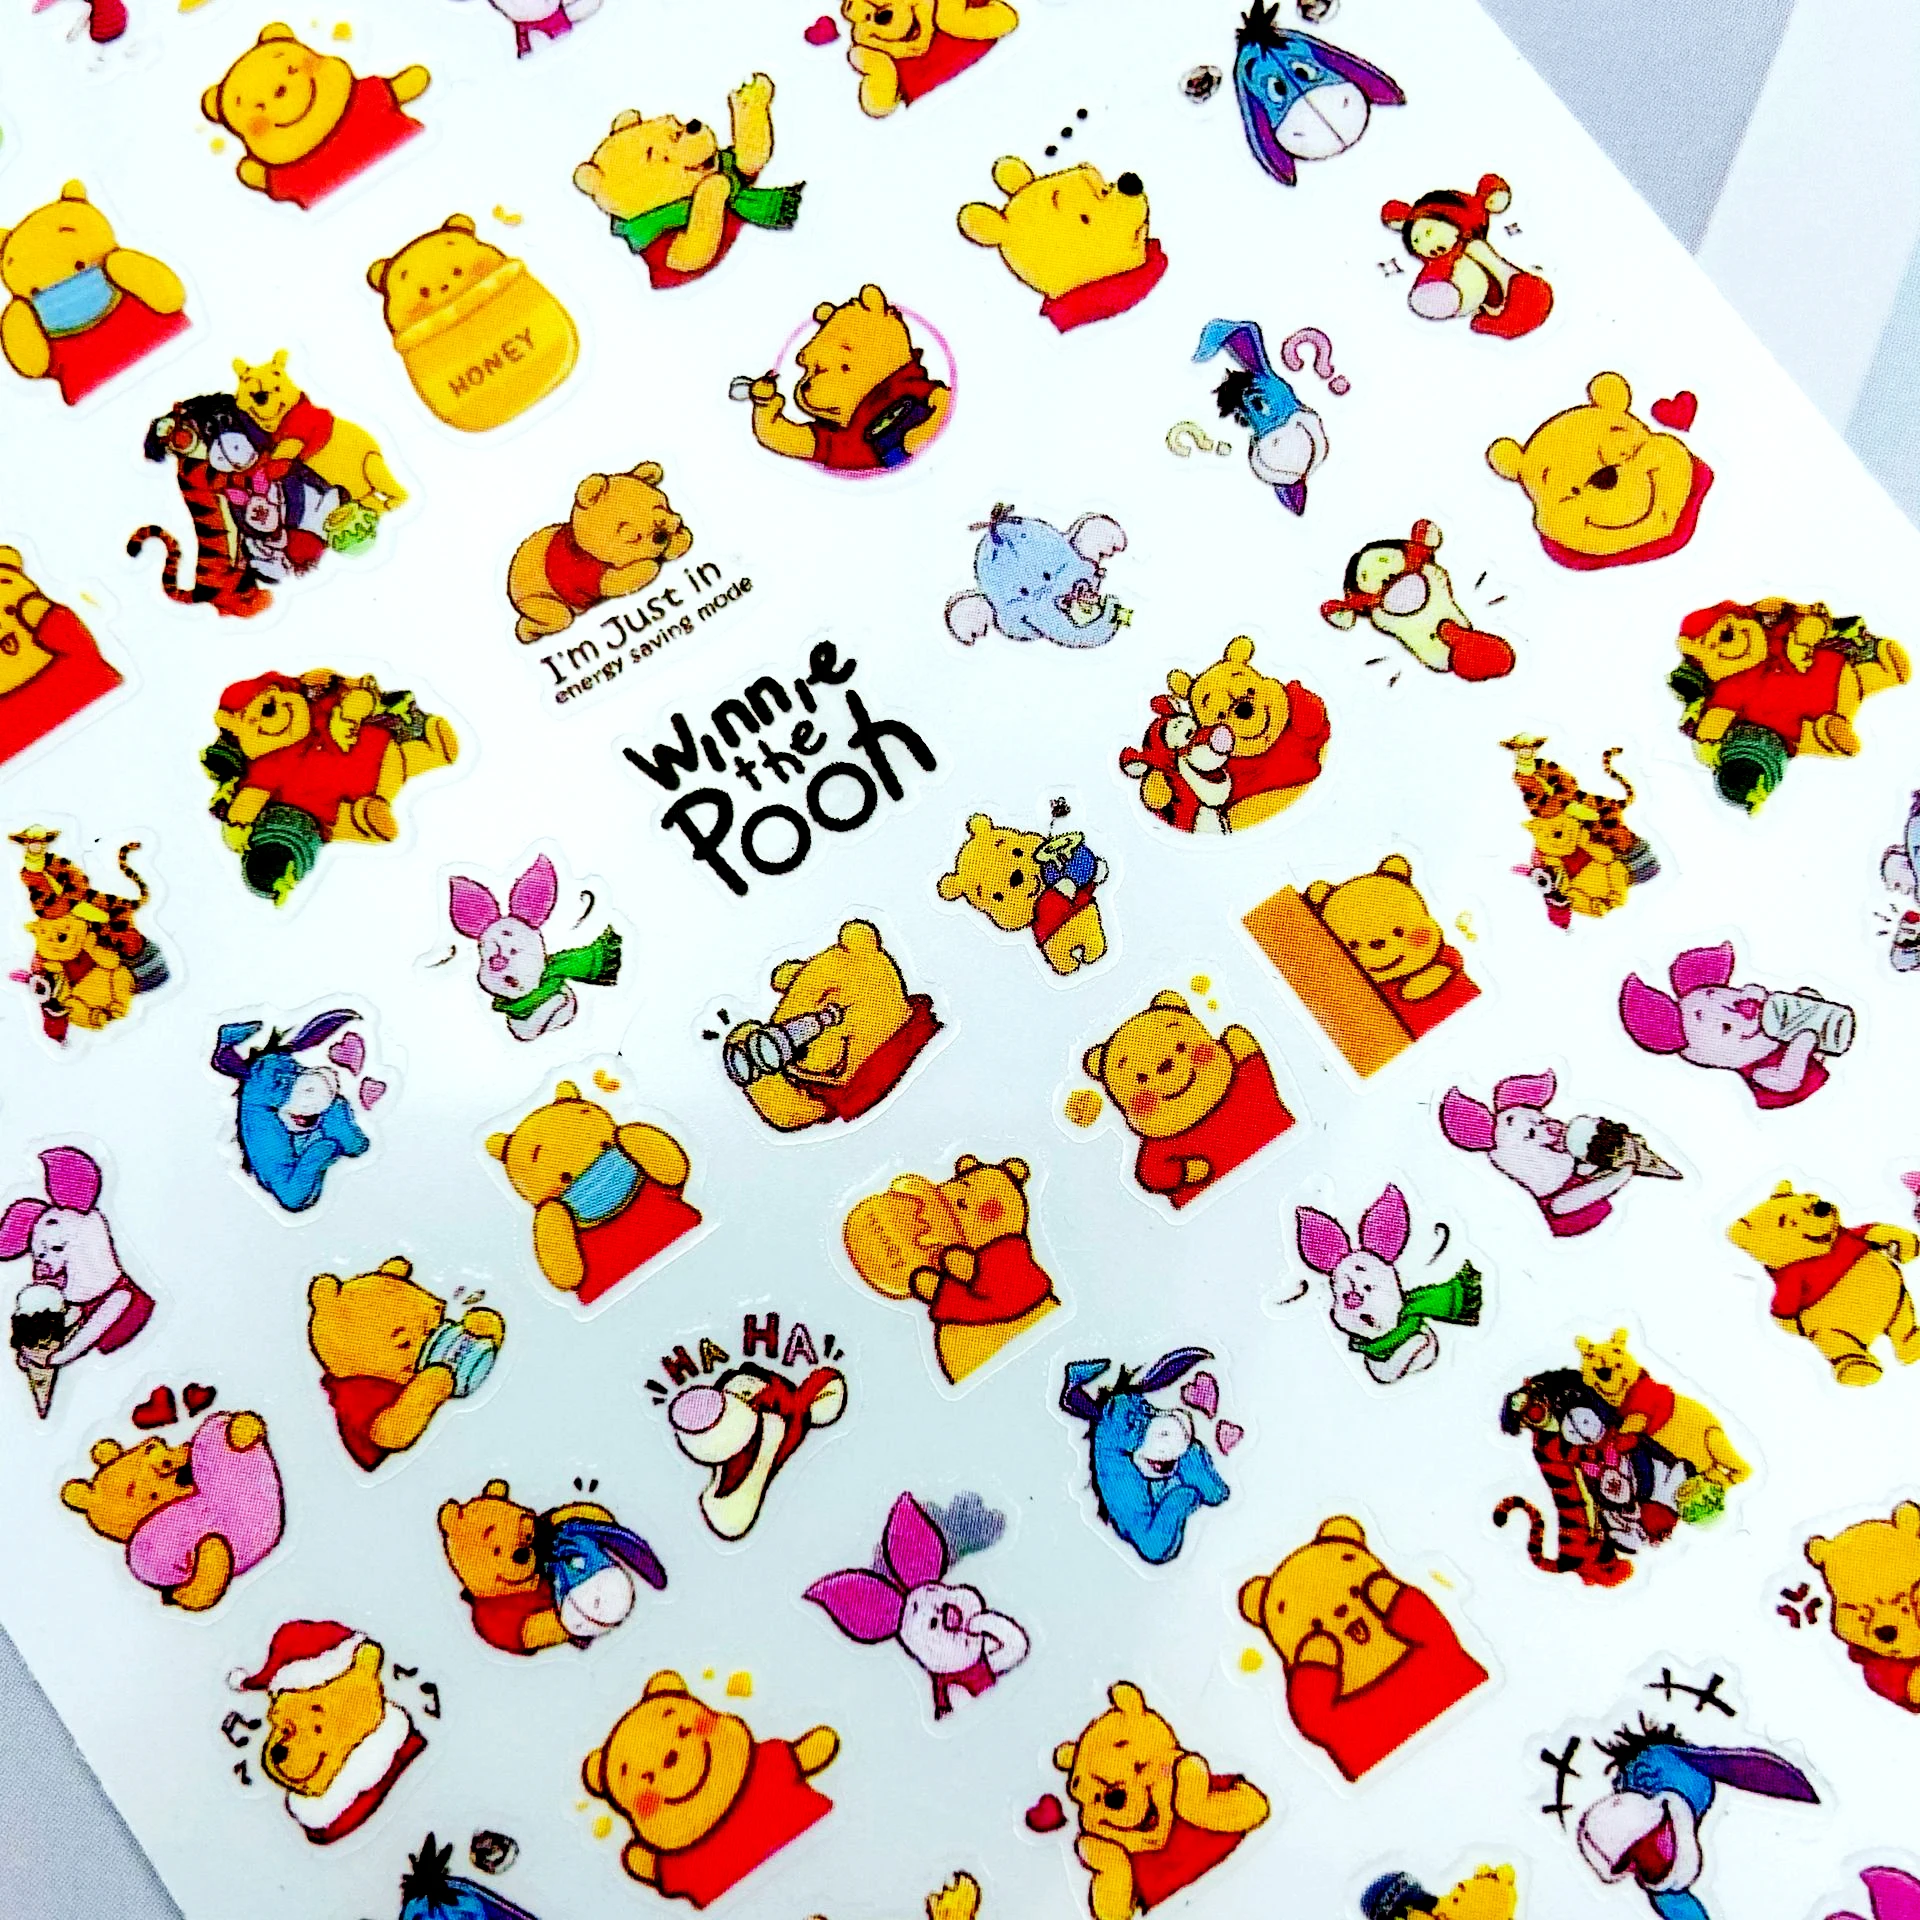 Pegatina de Anime de dibujos animados de Disney, Stitch, Winnie the Pooh, Princesa de Disney, pegatina de uñas de dibujos Animados hecha a mano, pegatina de uñas de Disney DIY